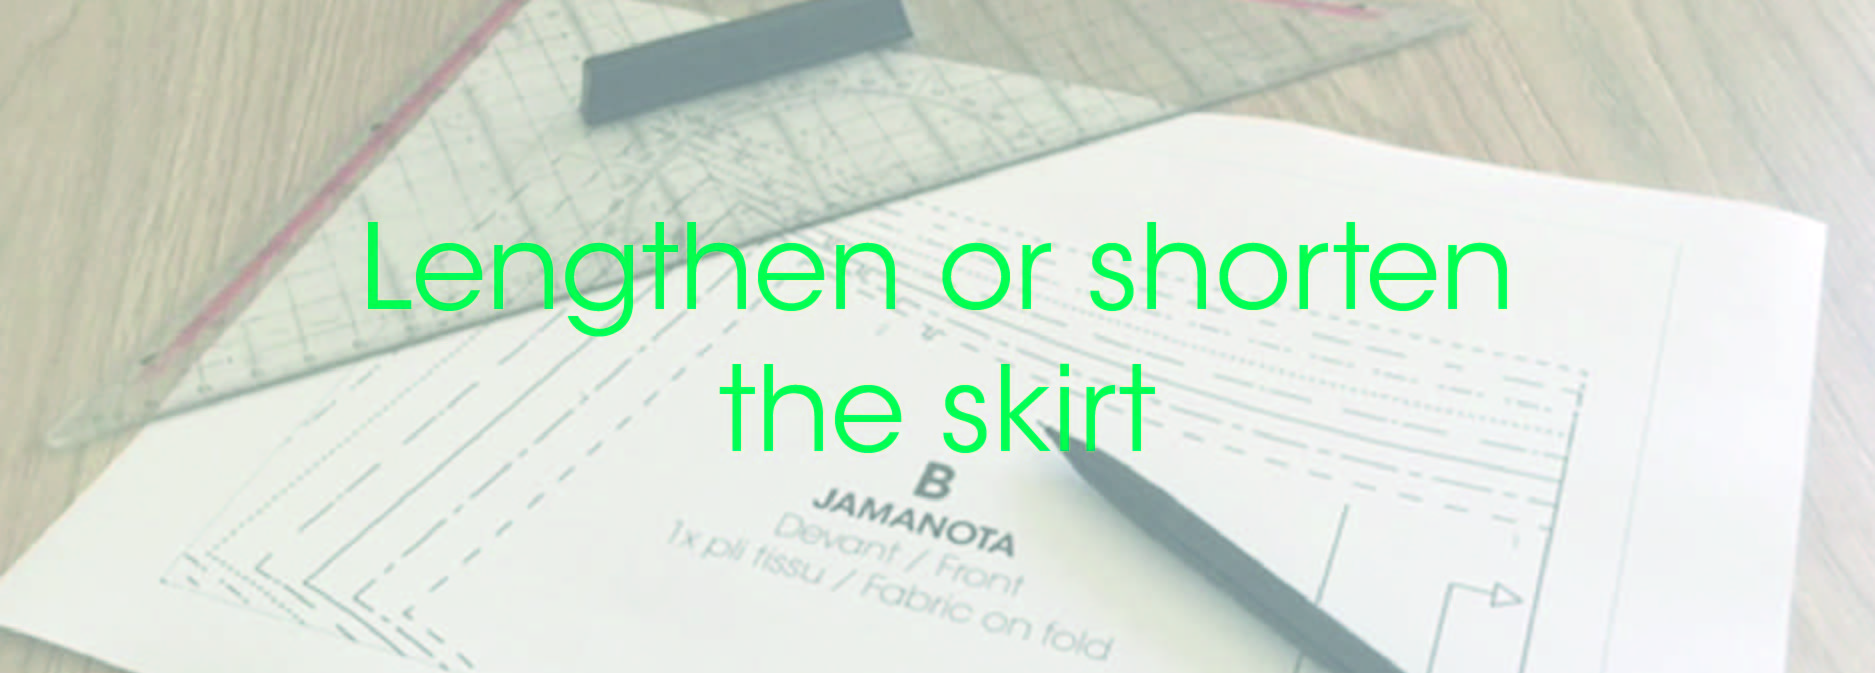 Pattern_Making_How_to_shorten_or_lengthen_the_skirt